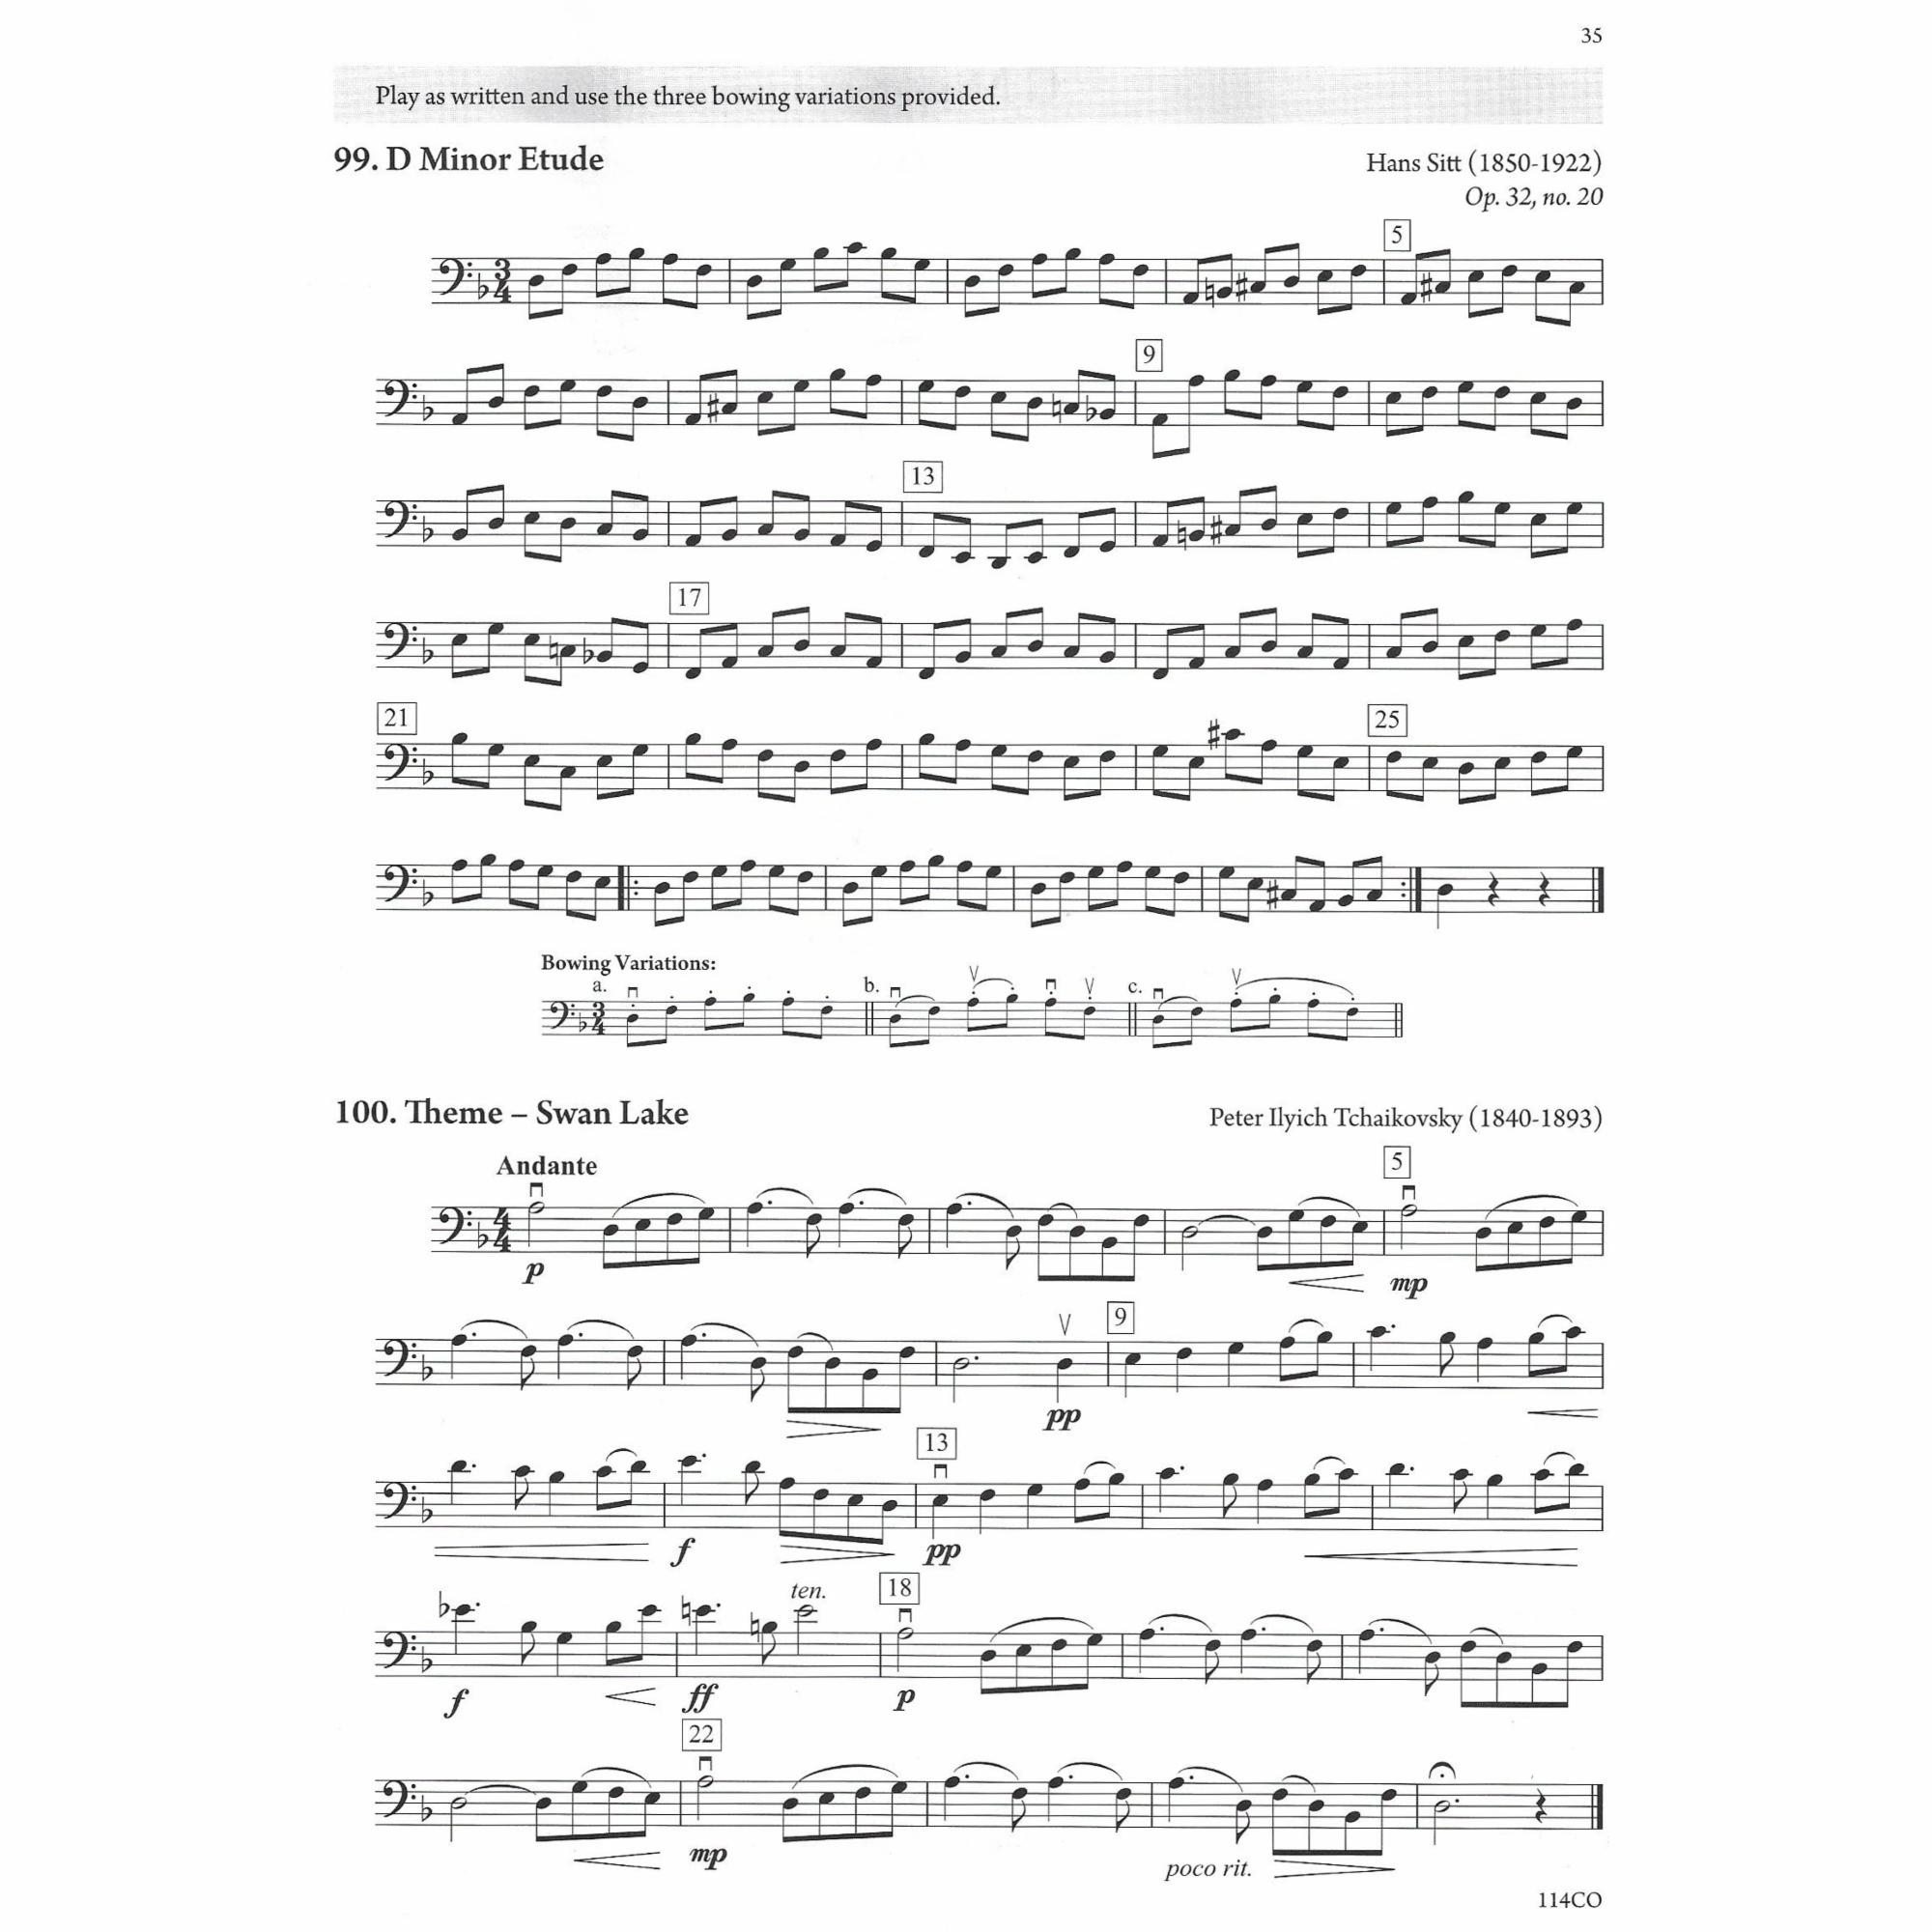 Sample: Cello (Pg. 35)